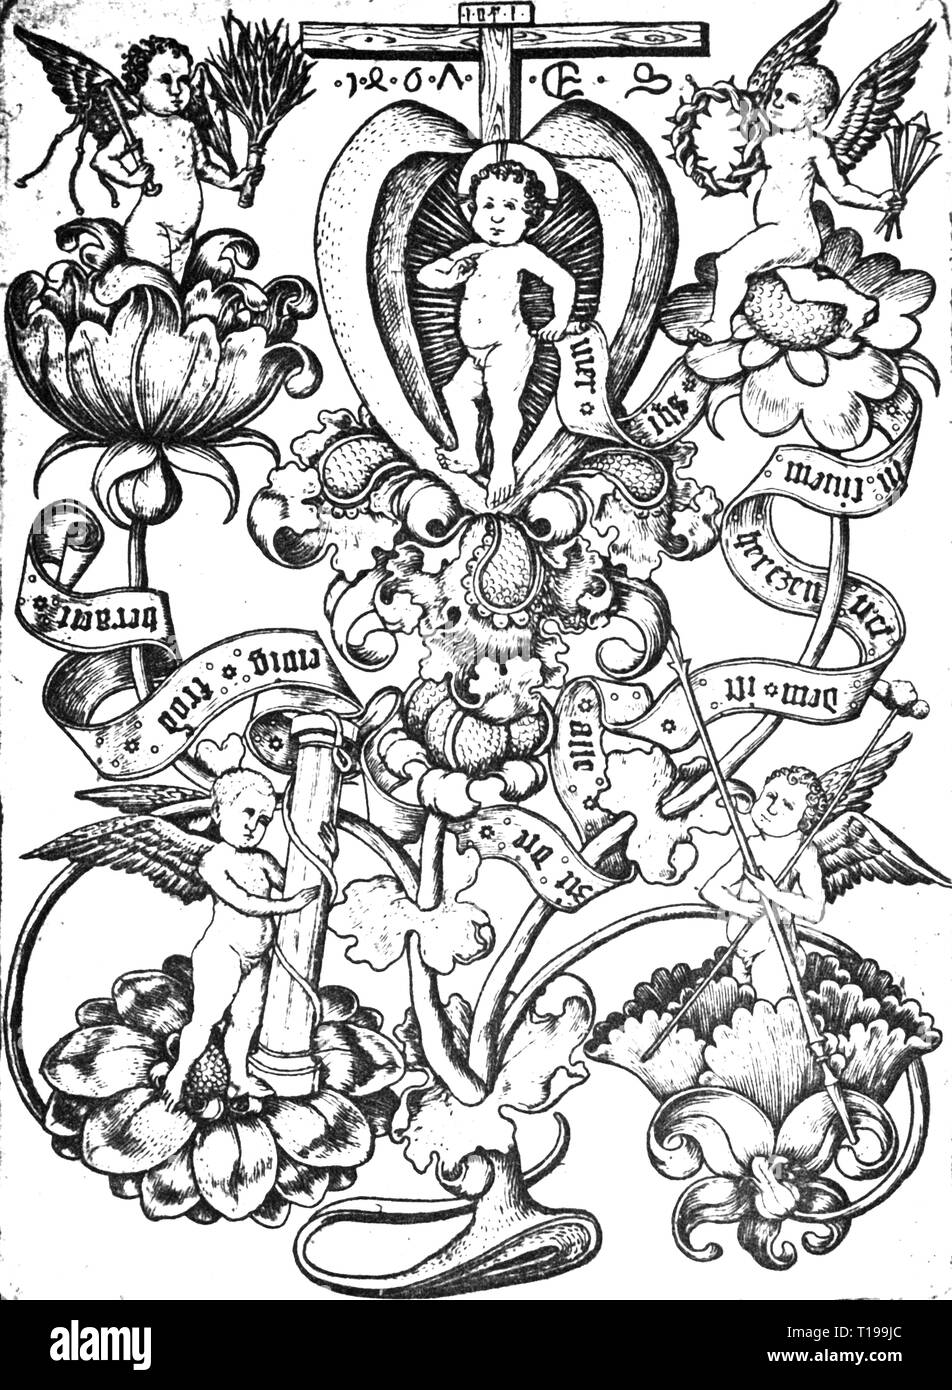 La religion, le christianisme, Jésus Christ, passion, 'l'Enfant Jésus dans l'âme', gravure sur cuivre par Maître E.S. (Vers 1420 - vers 1468), 1461, l'artiste n'a pas d'auteur pour être effacé Banque D'Images